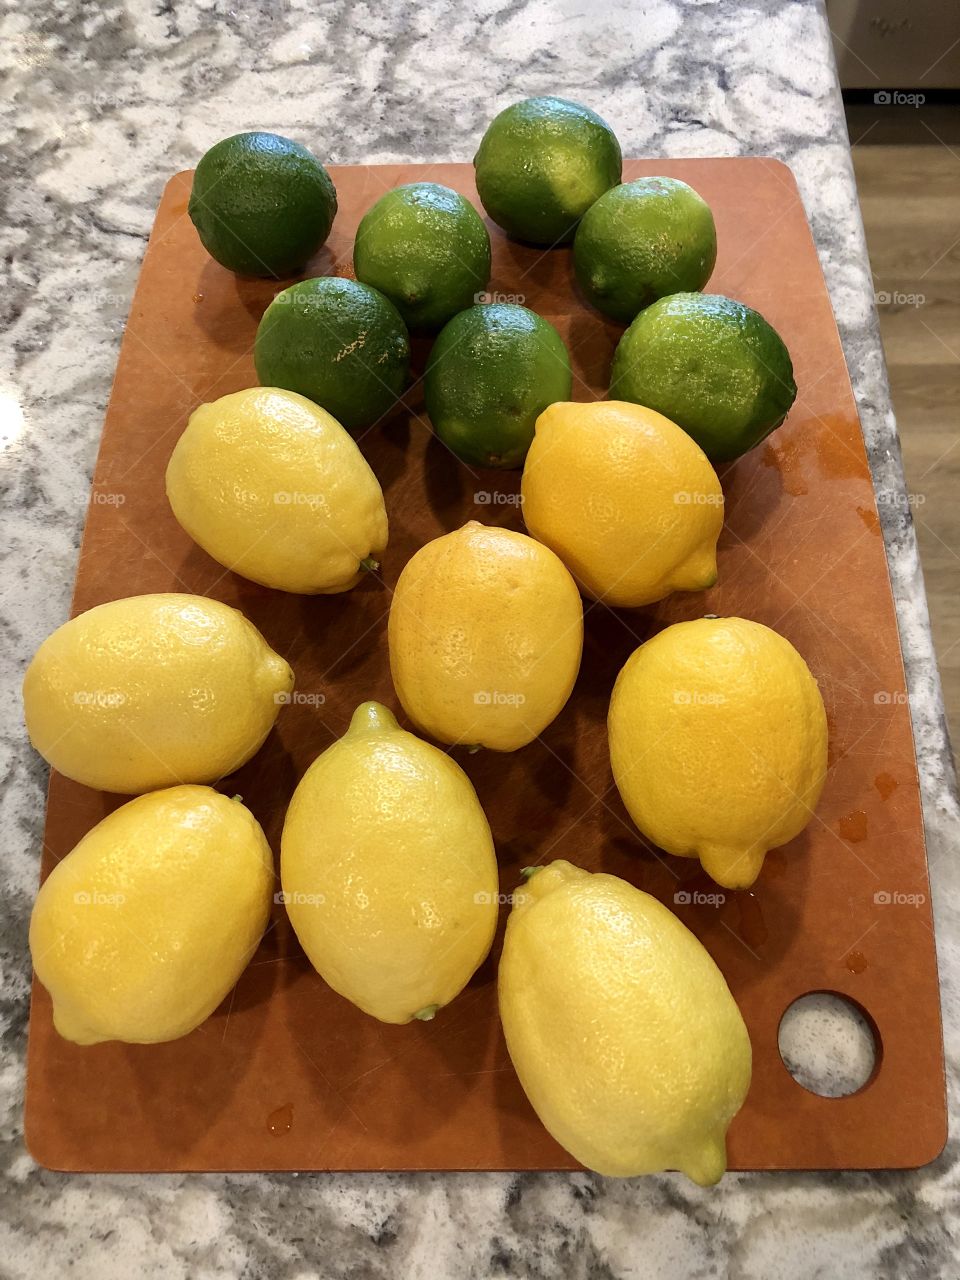 Lemons and limes on counter